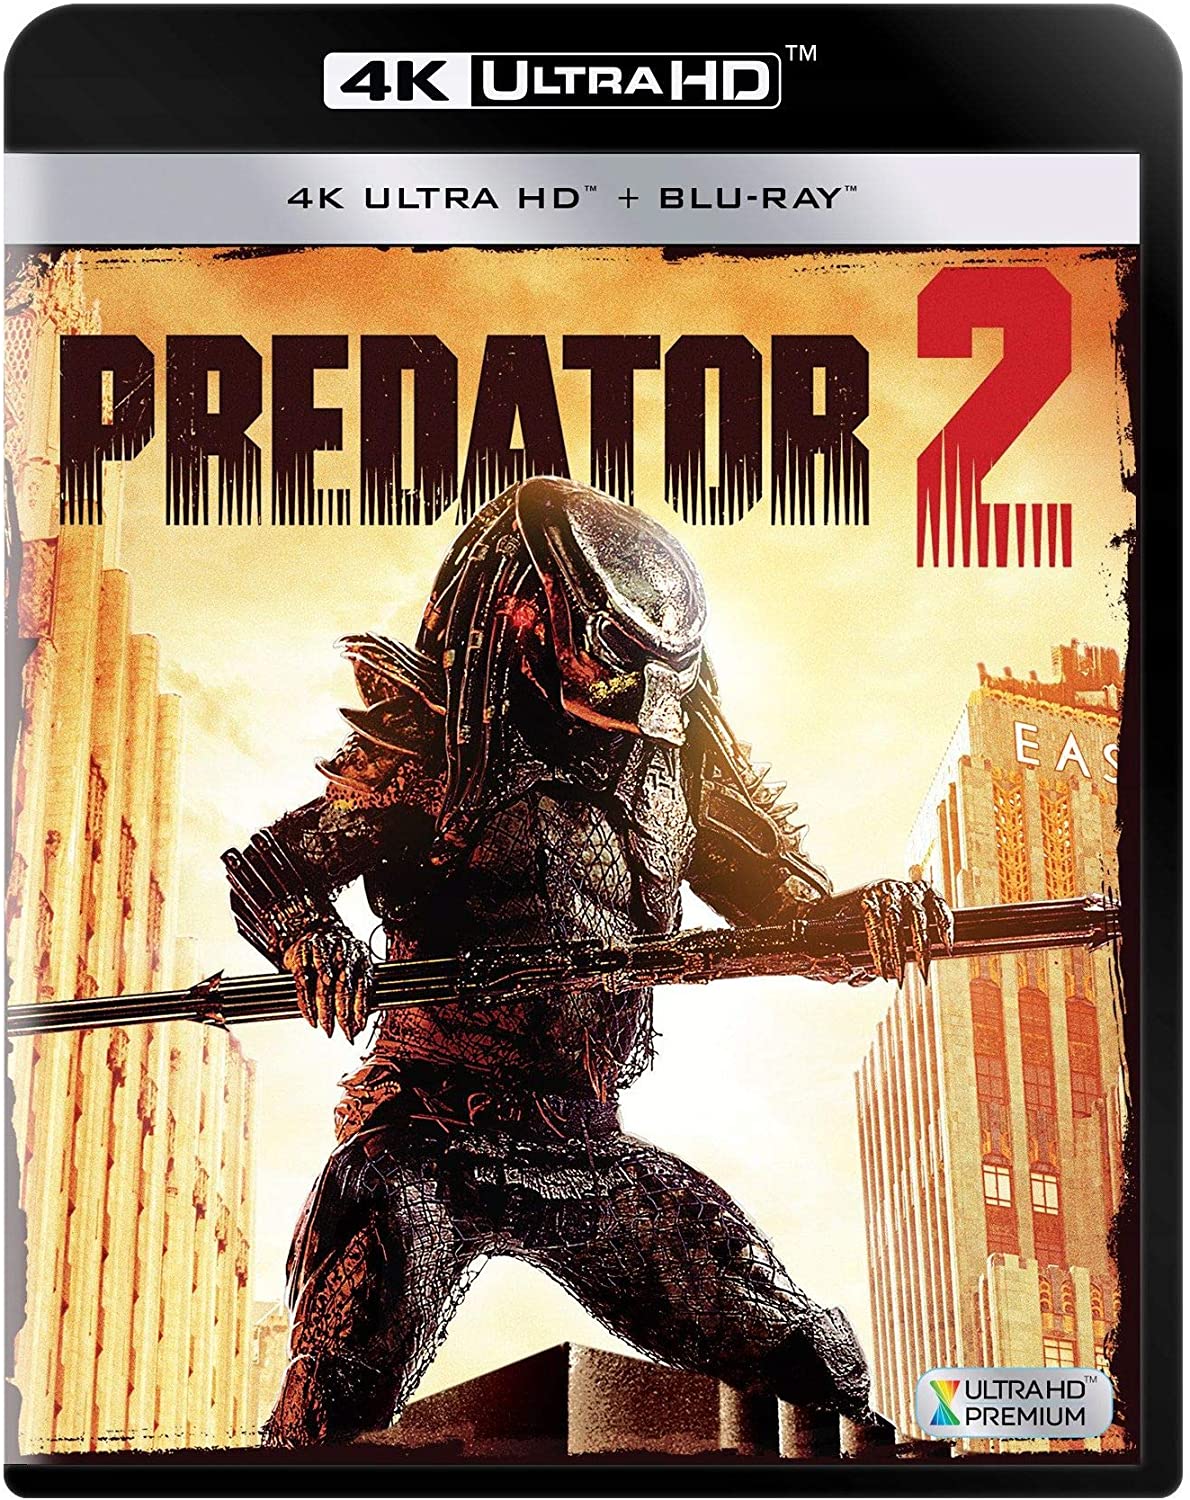 Stiahni si UHD Filmy  Predator II / Predator 2 (1990)(CZ/EN)[HEVC][2160p] = CSFD 66%